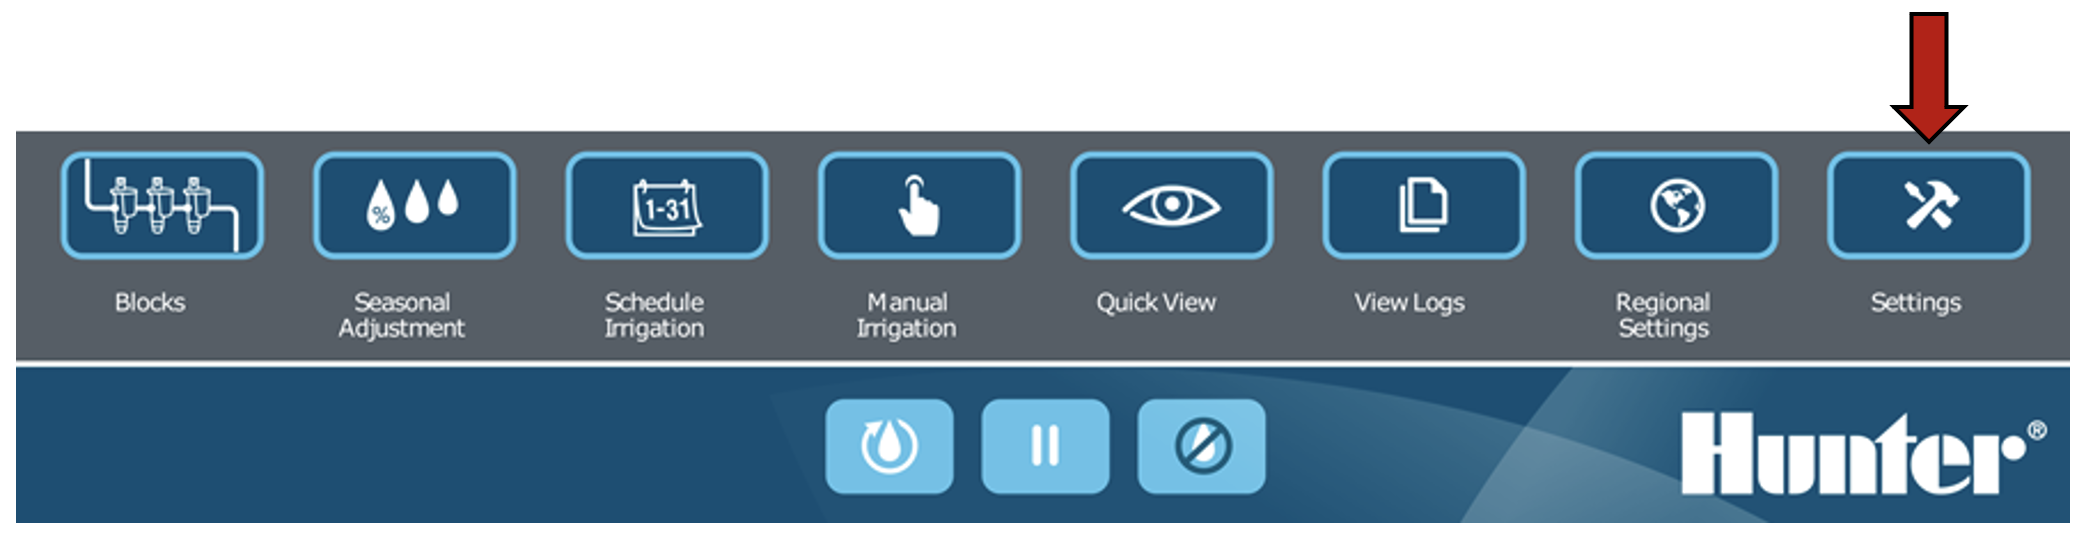 Image de l'interface montrant le bouton Paramètres sélectionné.